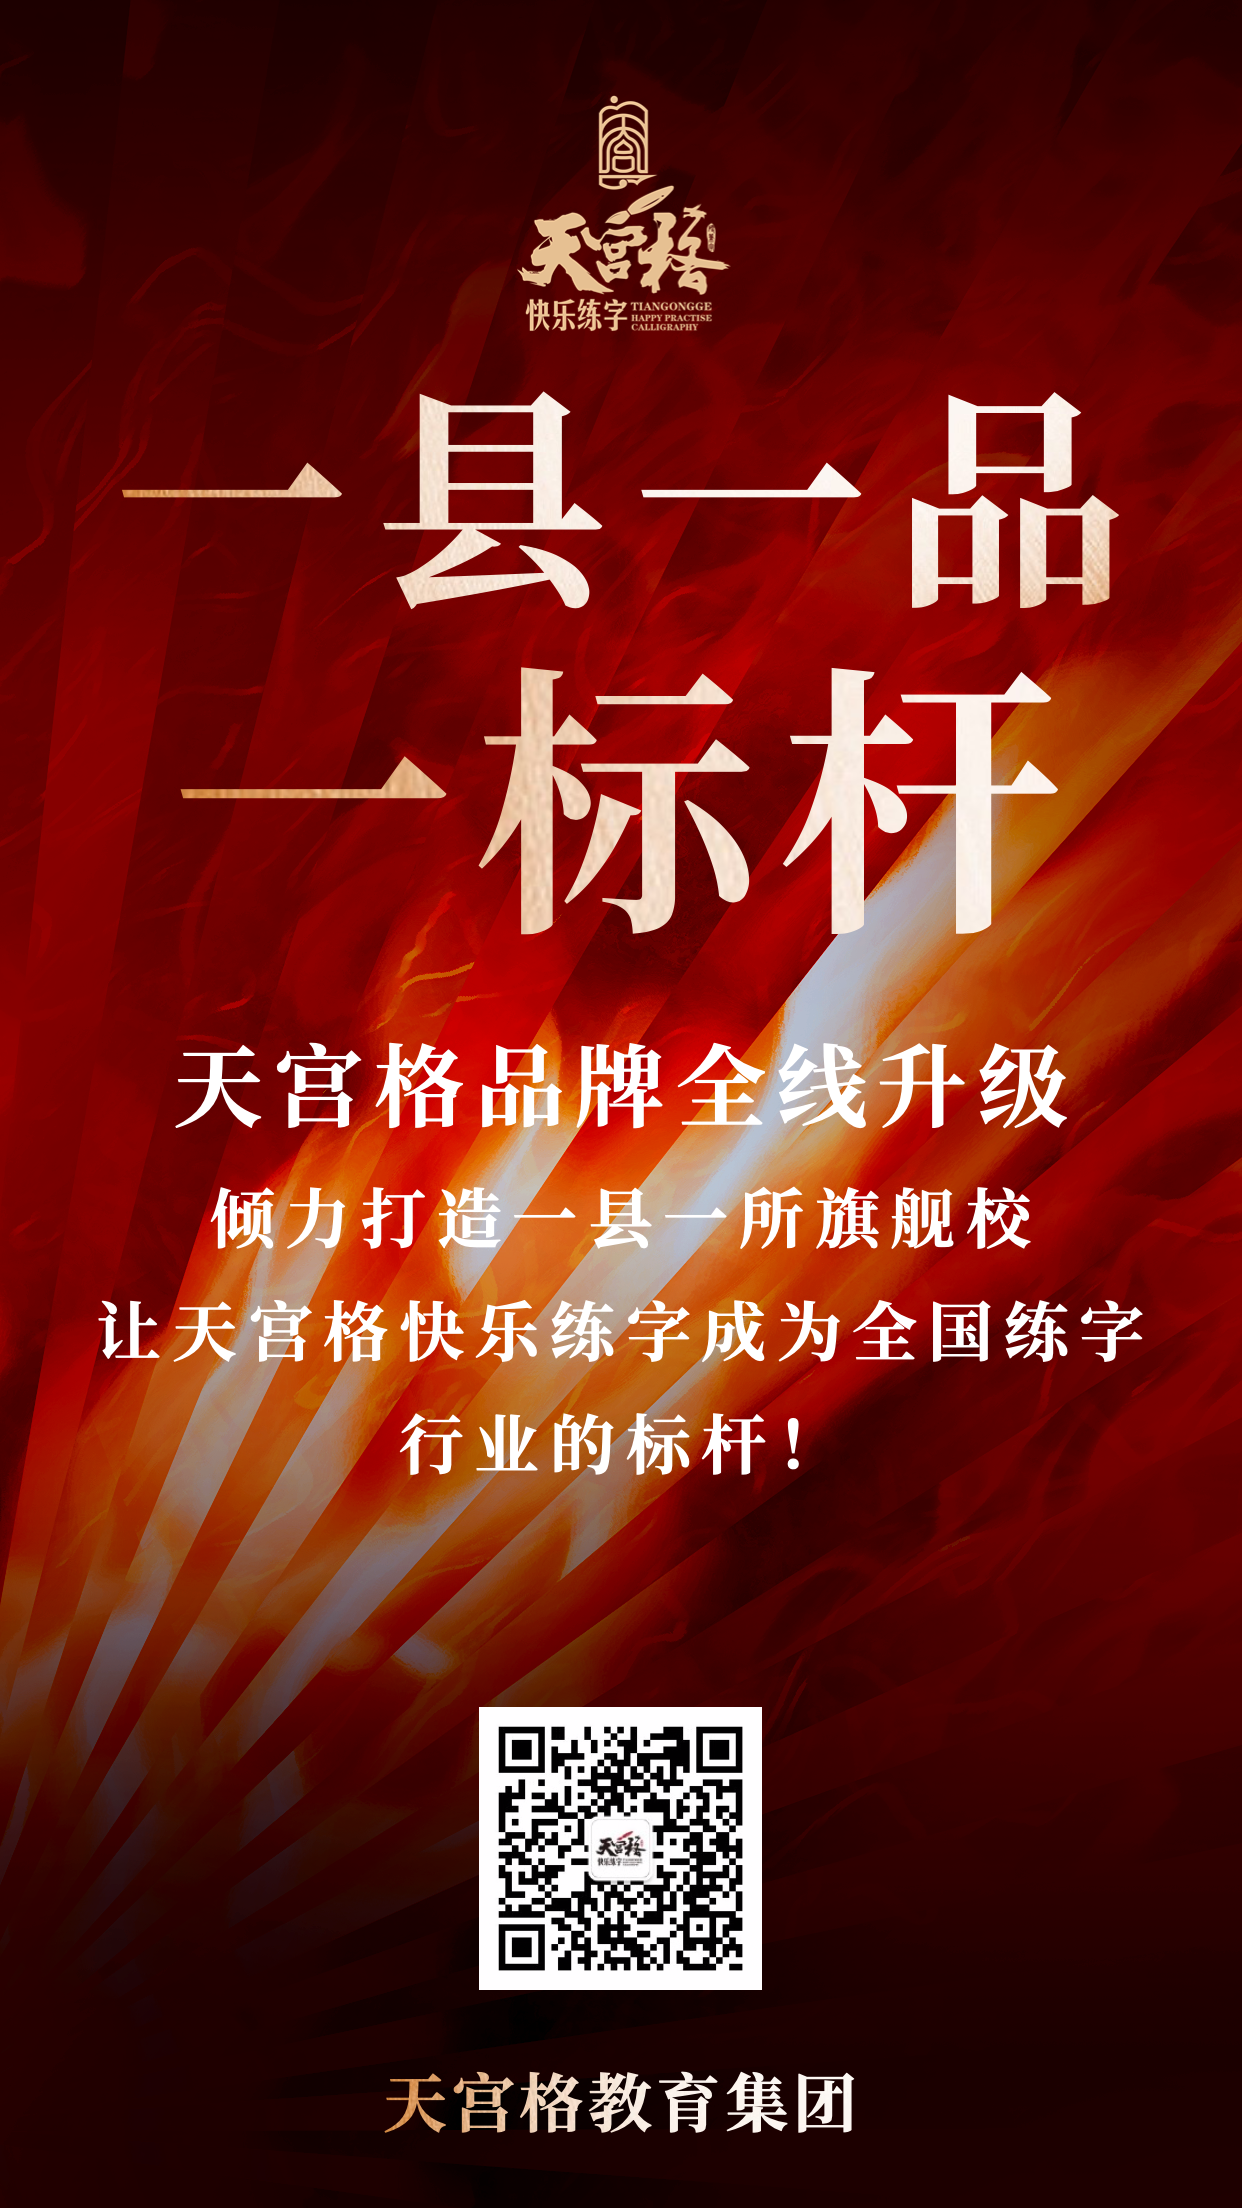 北京天宫格教育总部“一县一品一标杆”工程正式启动！